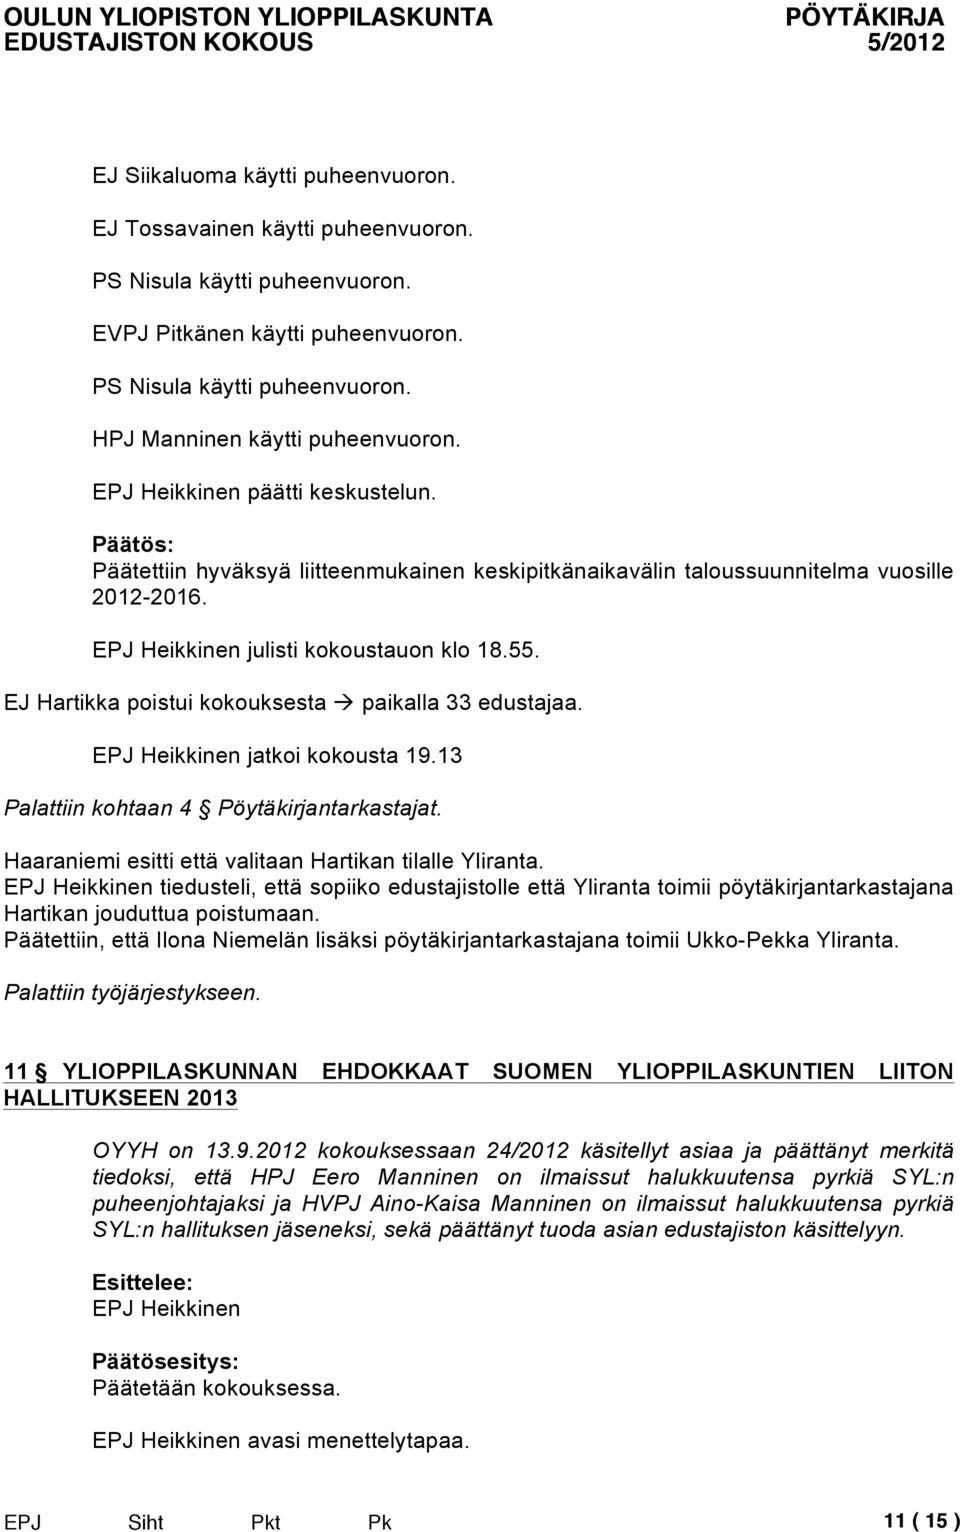 EPJ Heikkinen jatkoi kokousta 19.13 Palattiin kohtaan 4 Pöytäkirjantarkastajat. Haaraniemi esitti että valitaan Hartikan tilalle Yliranta.